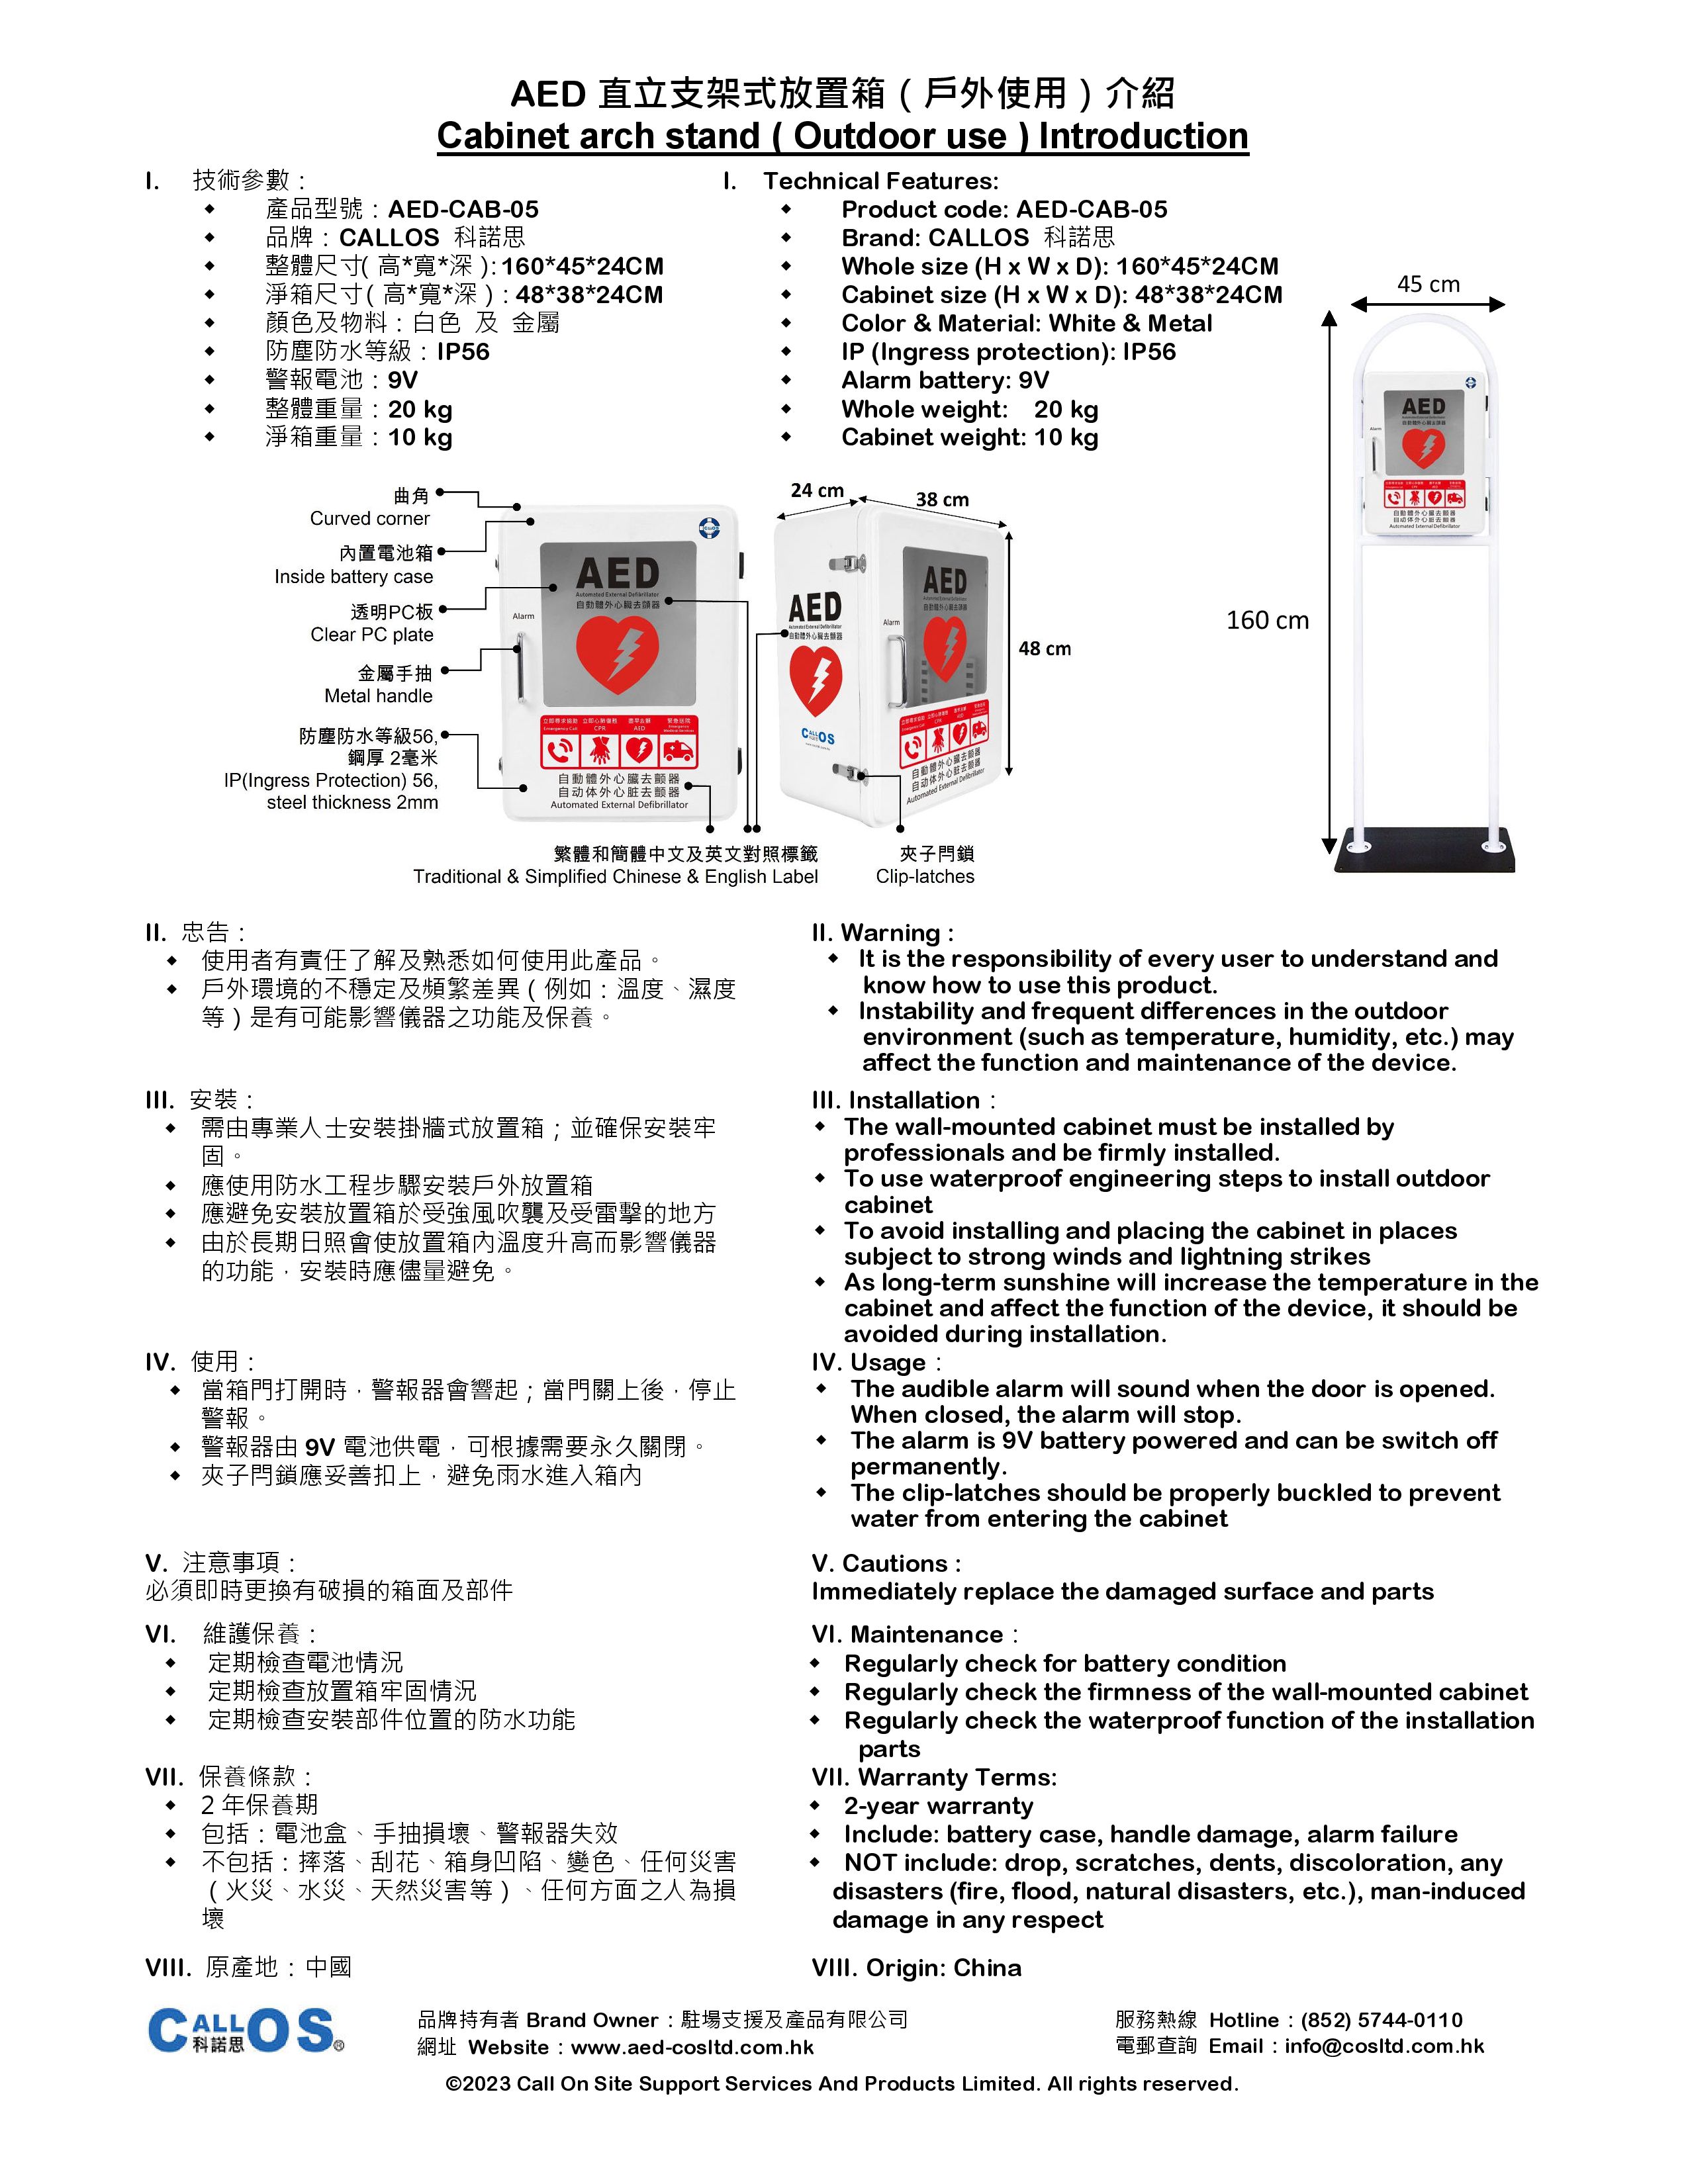 Cabinet AED-CAB-05